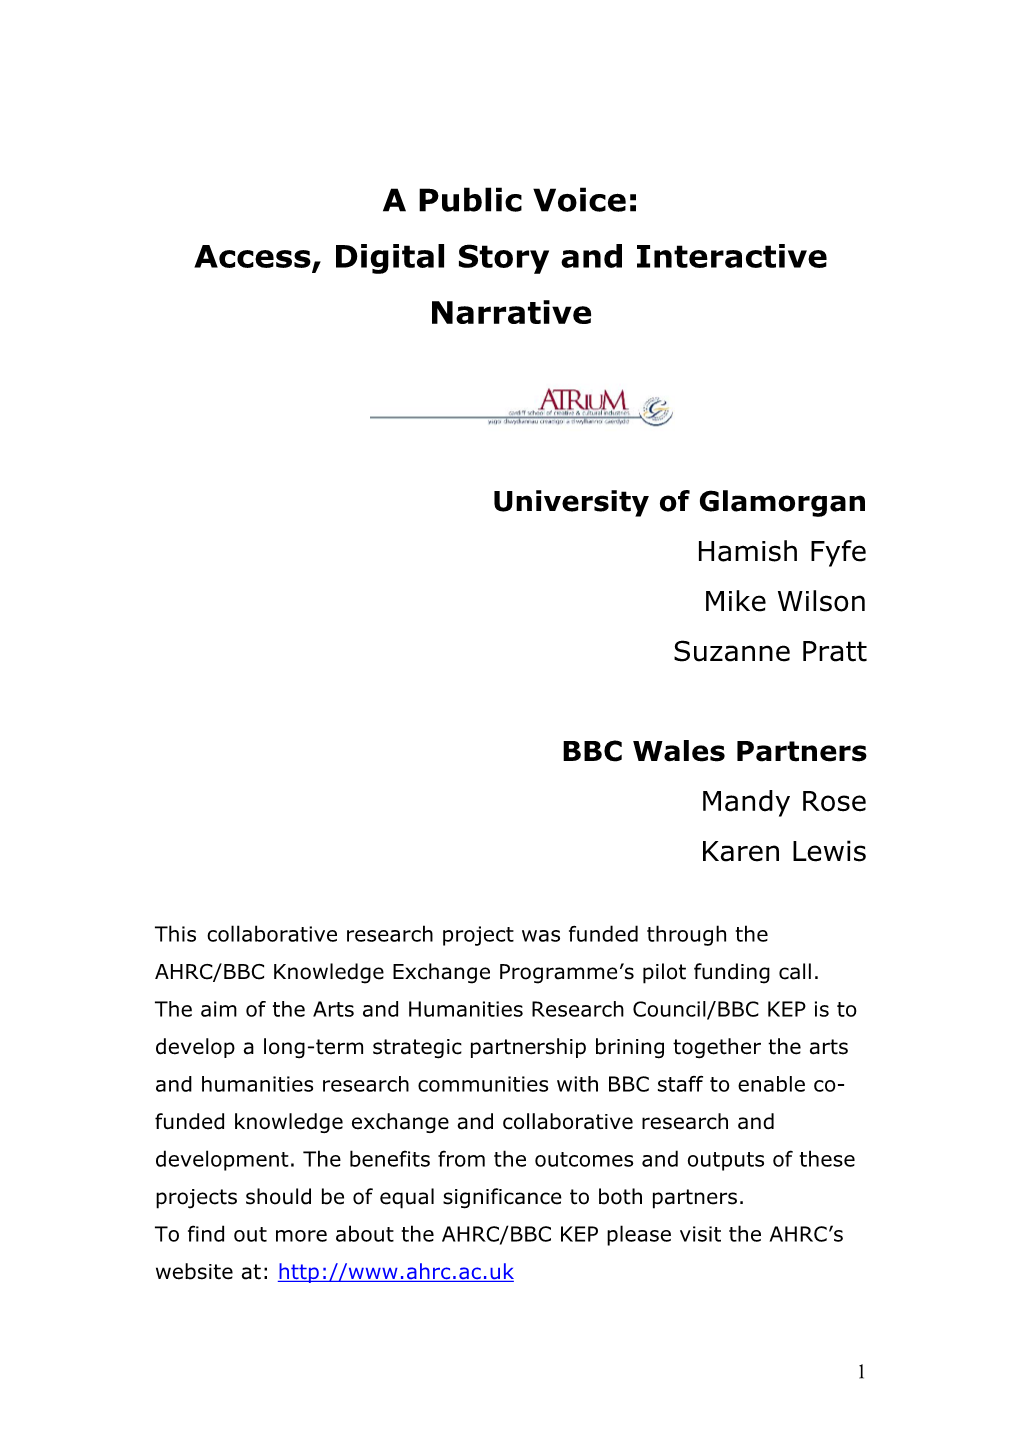 A Public Voice – AHRC/BBC Knowledge Exchange Project